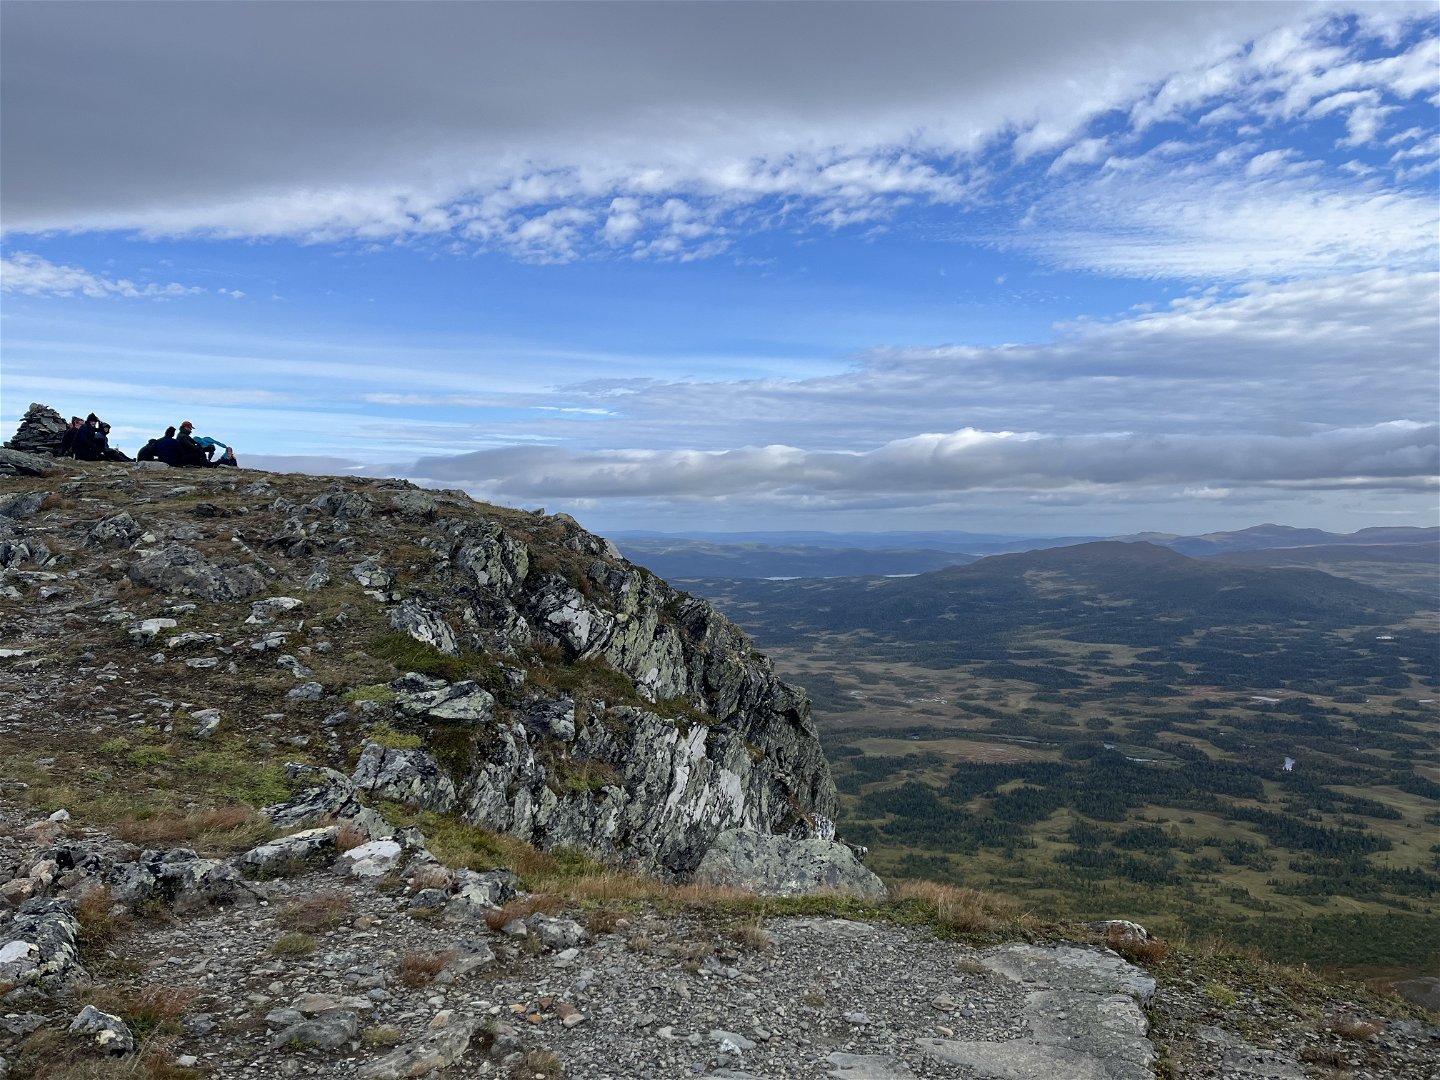 Satsfjällets topp med utsikt över myrlandskapet i Gitsfjällets naturreservat.